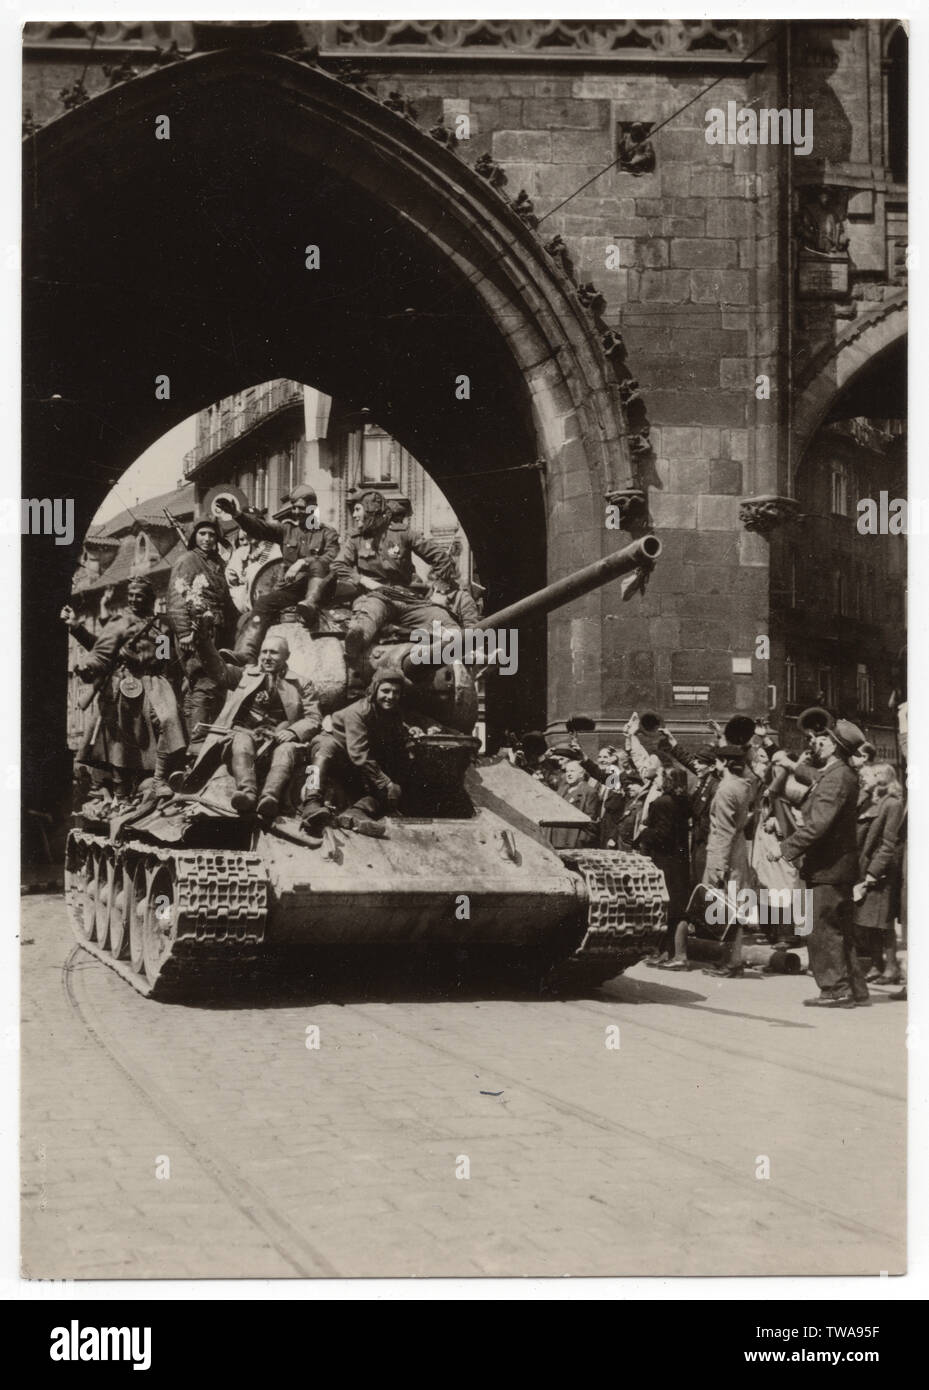 Réservoir T-34 de l'Armée rouge près de la tour poudrière (Prašná brána) à Prague, en Tchécoslovaquie, le 9 mai 1945. Photographie en noir et blanc publiées dans la République tchécoslovaque éditée en 1955. Avec la permission de l'Azoor Collection Carte Postale. Banque D'Images